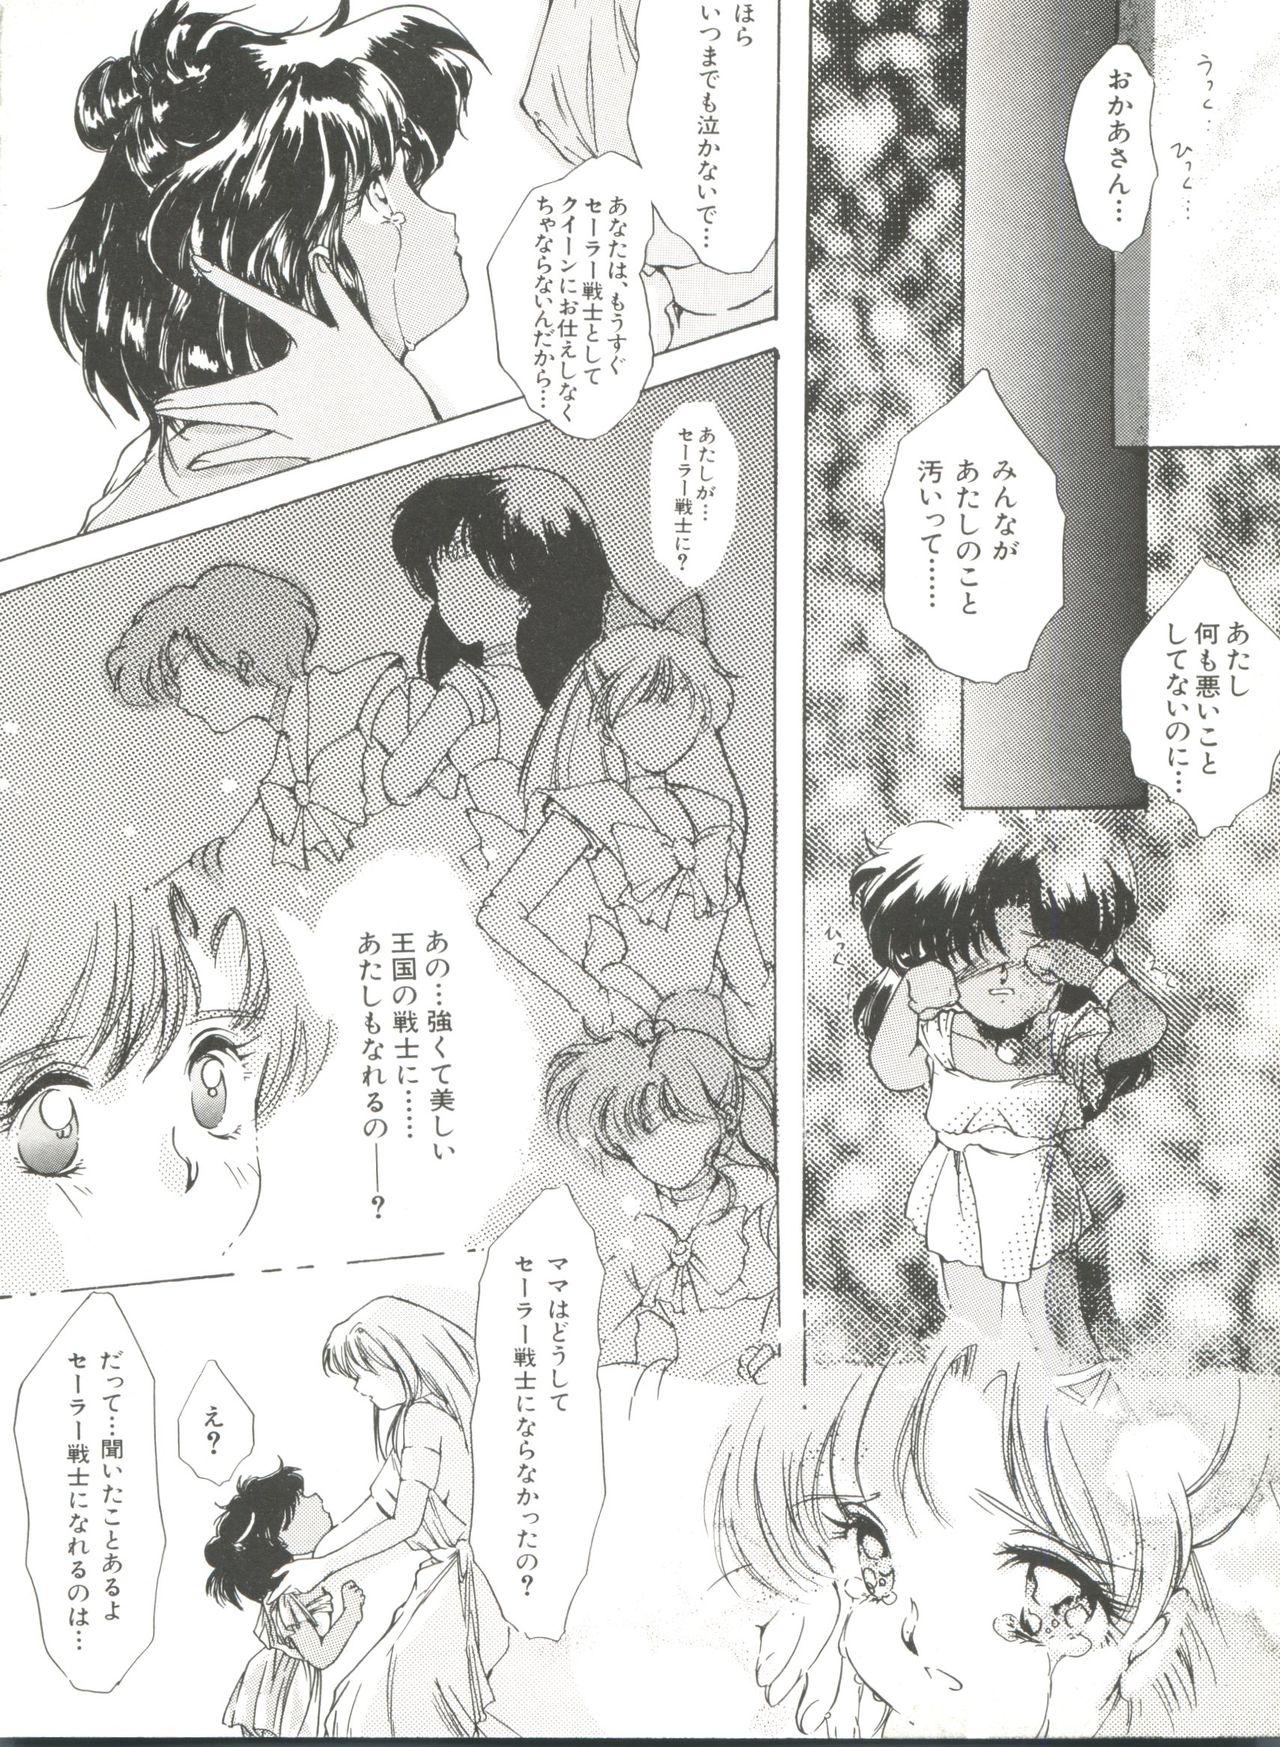 Bishoujo Doujinshi Anthology 10 - Moon Paradise 6 Tsuki no Rakuen 56